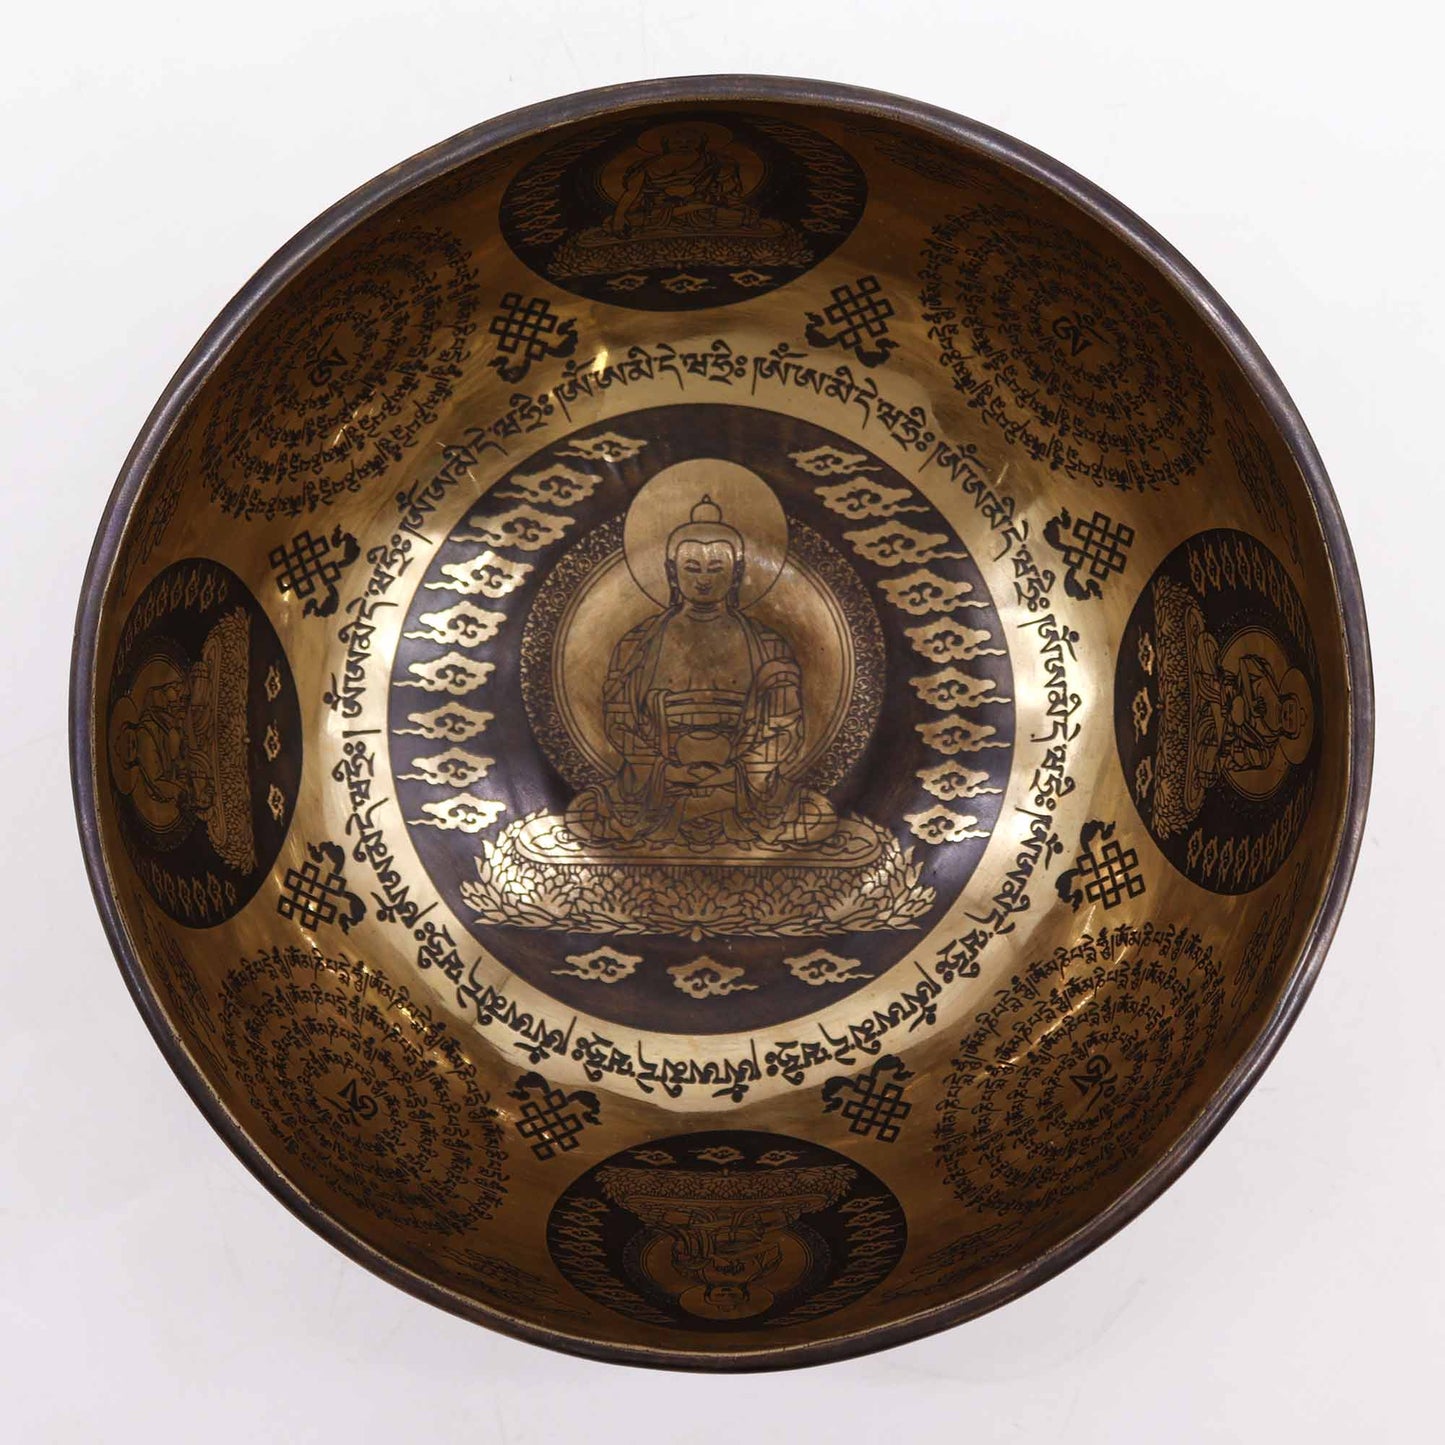 Tibetan Healing Engraved Bowl - 21cm - 5 Buddhas